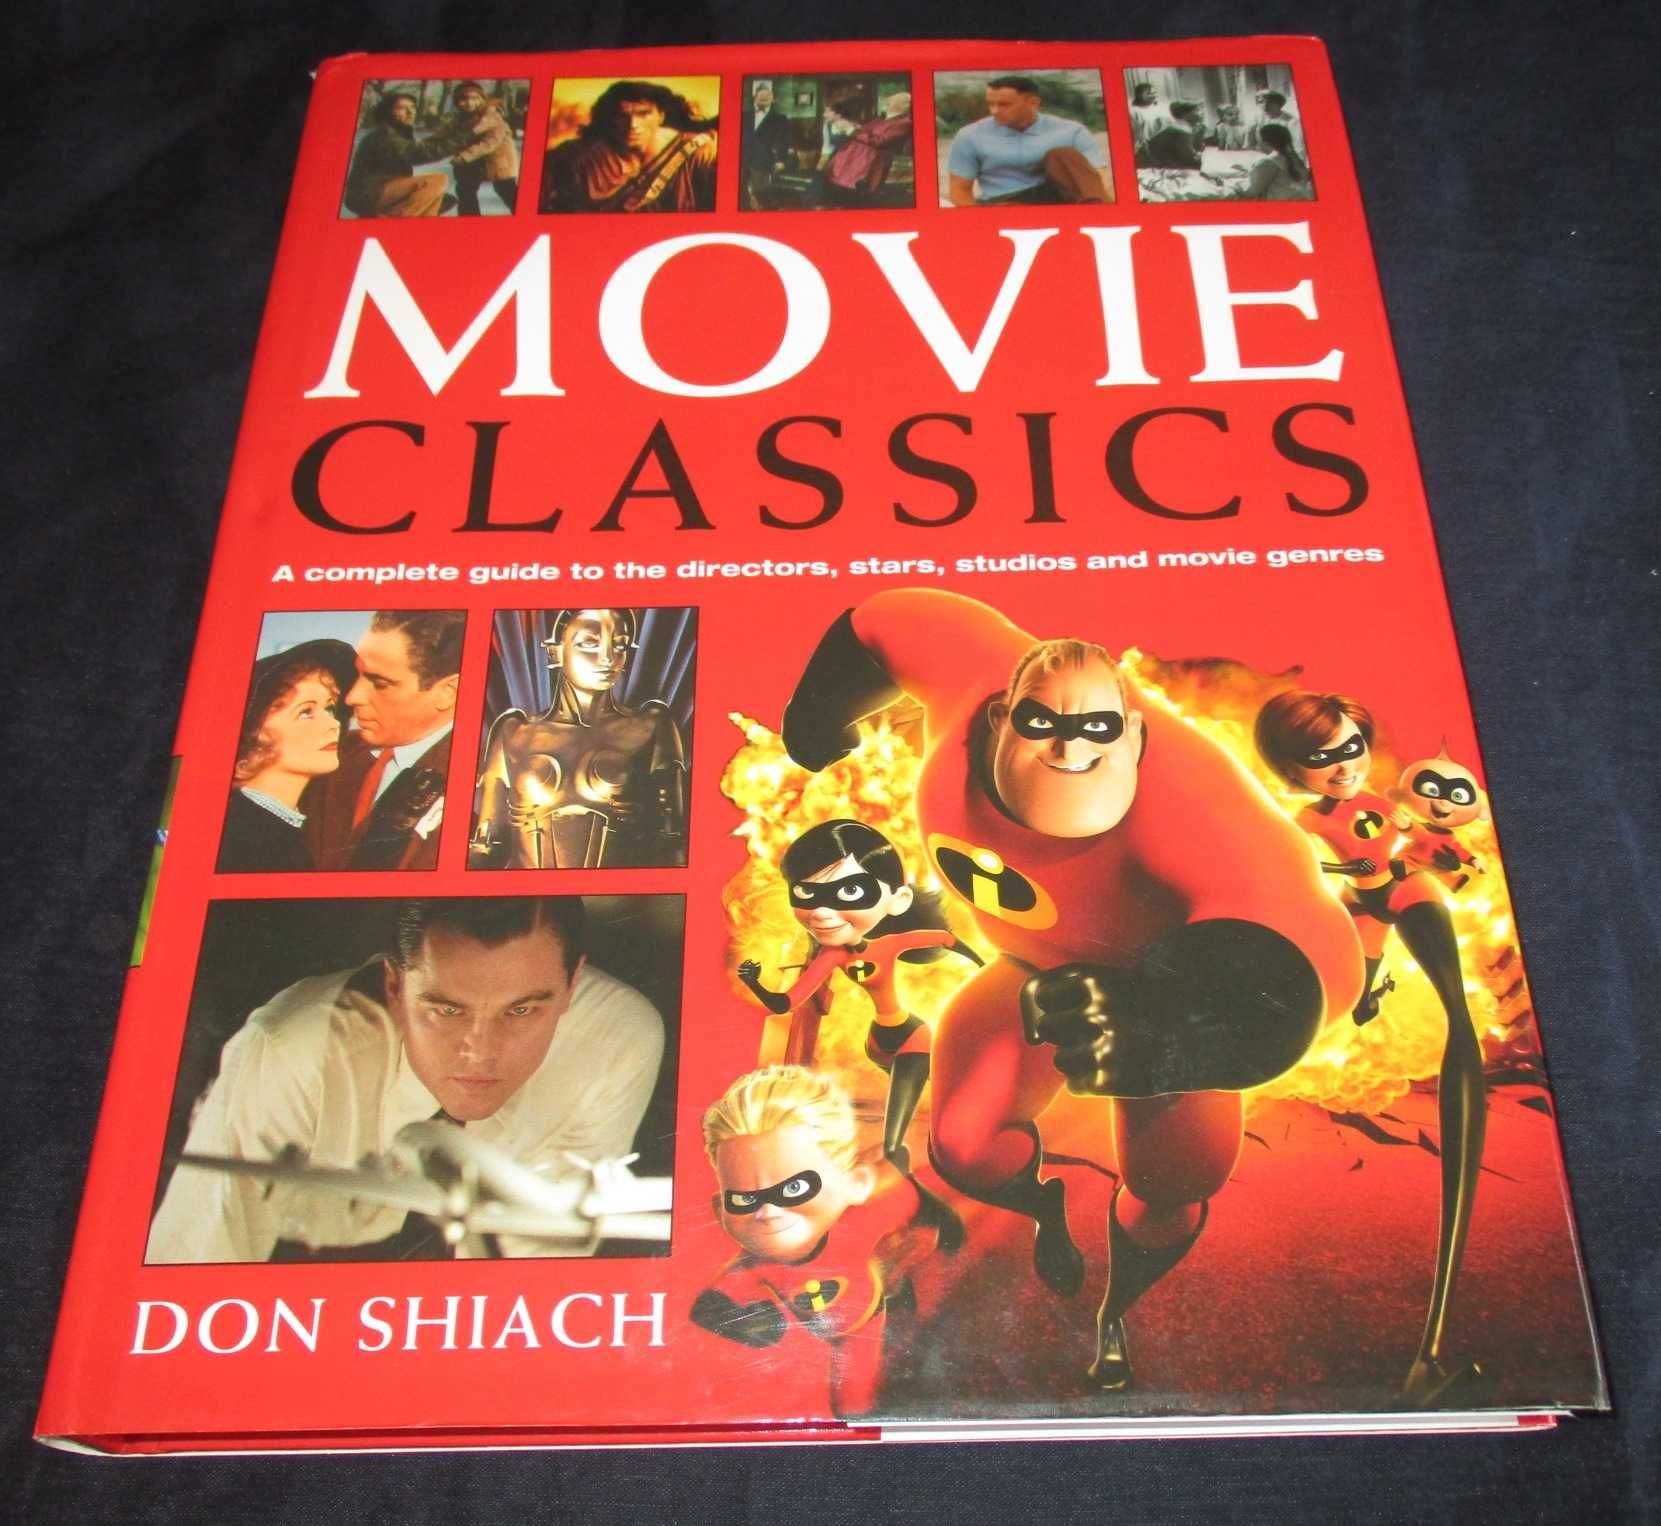 Livro Movie Classics Don Shiach complete guide